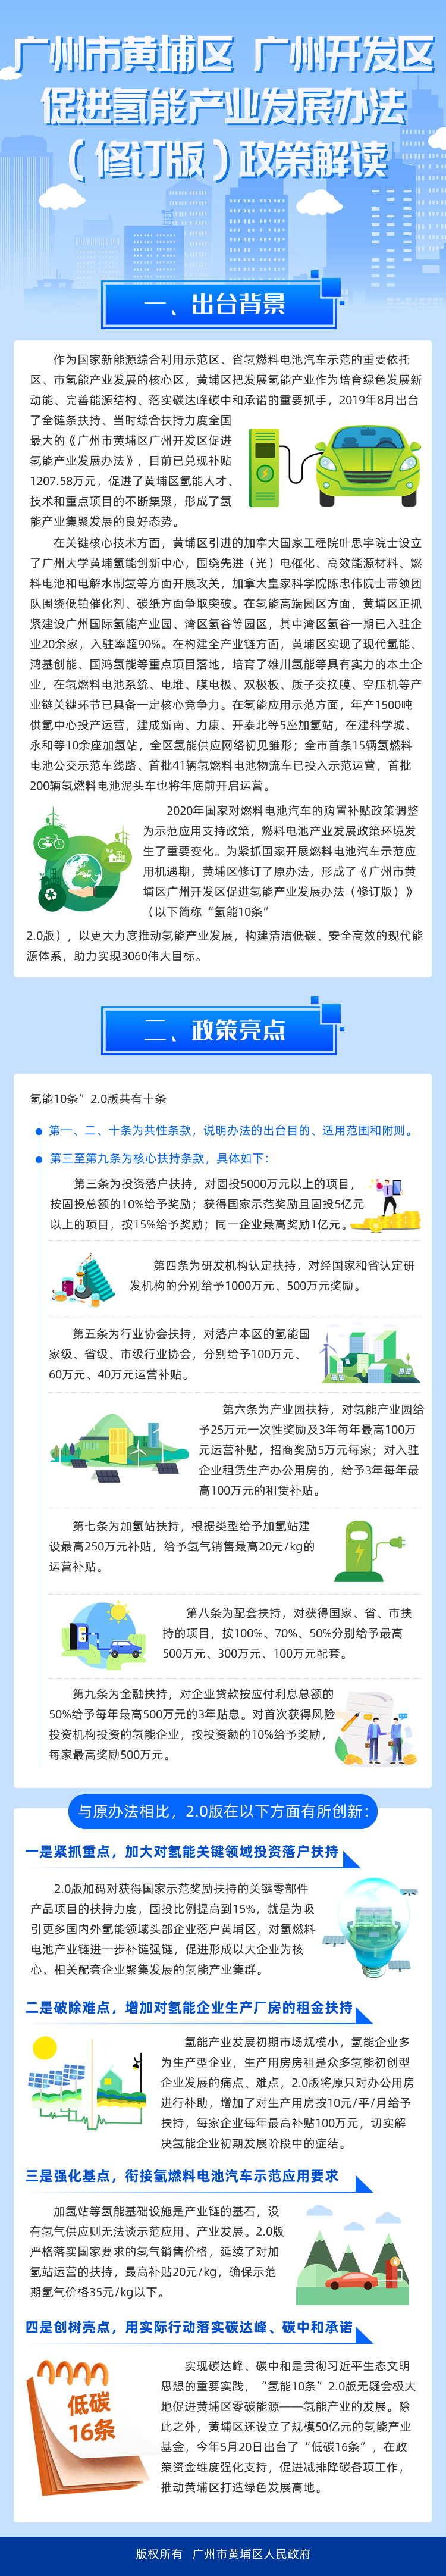 广州市黄埔区 广州开发区促进氢能产业发展办法（修订版）政策解读 .jpg